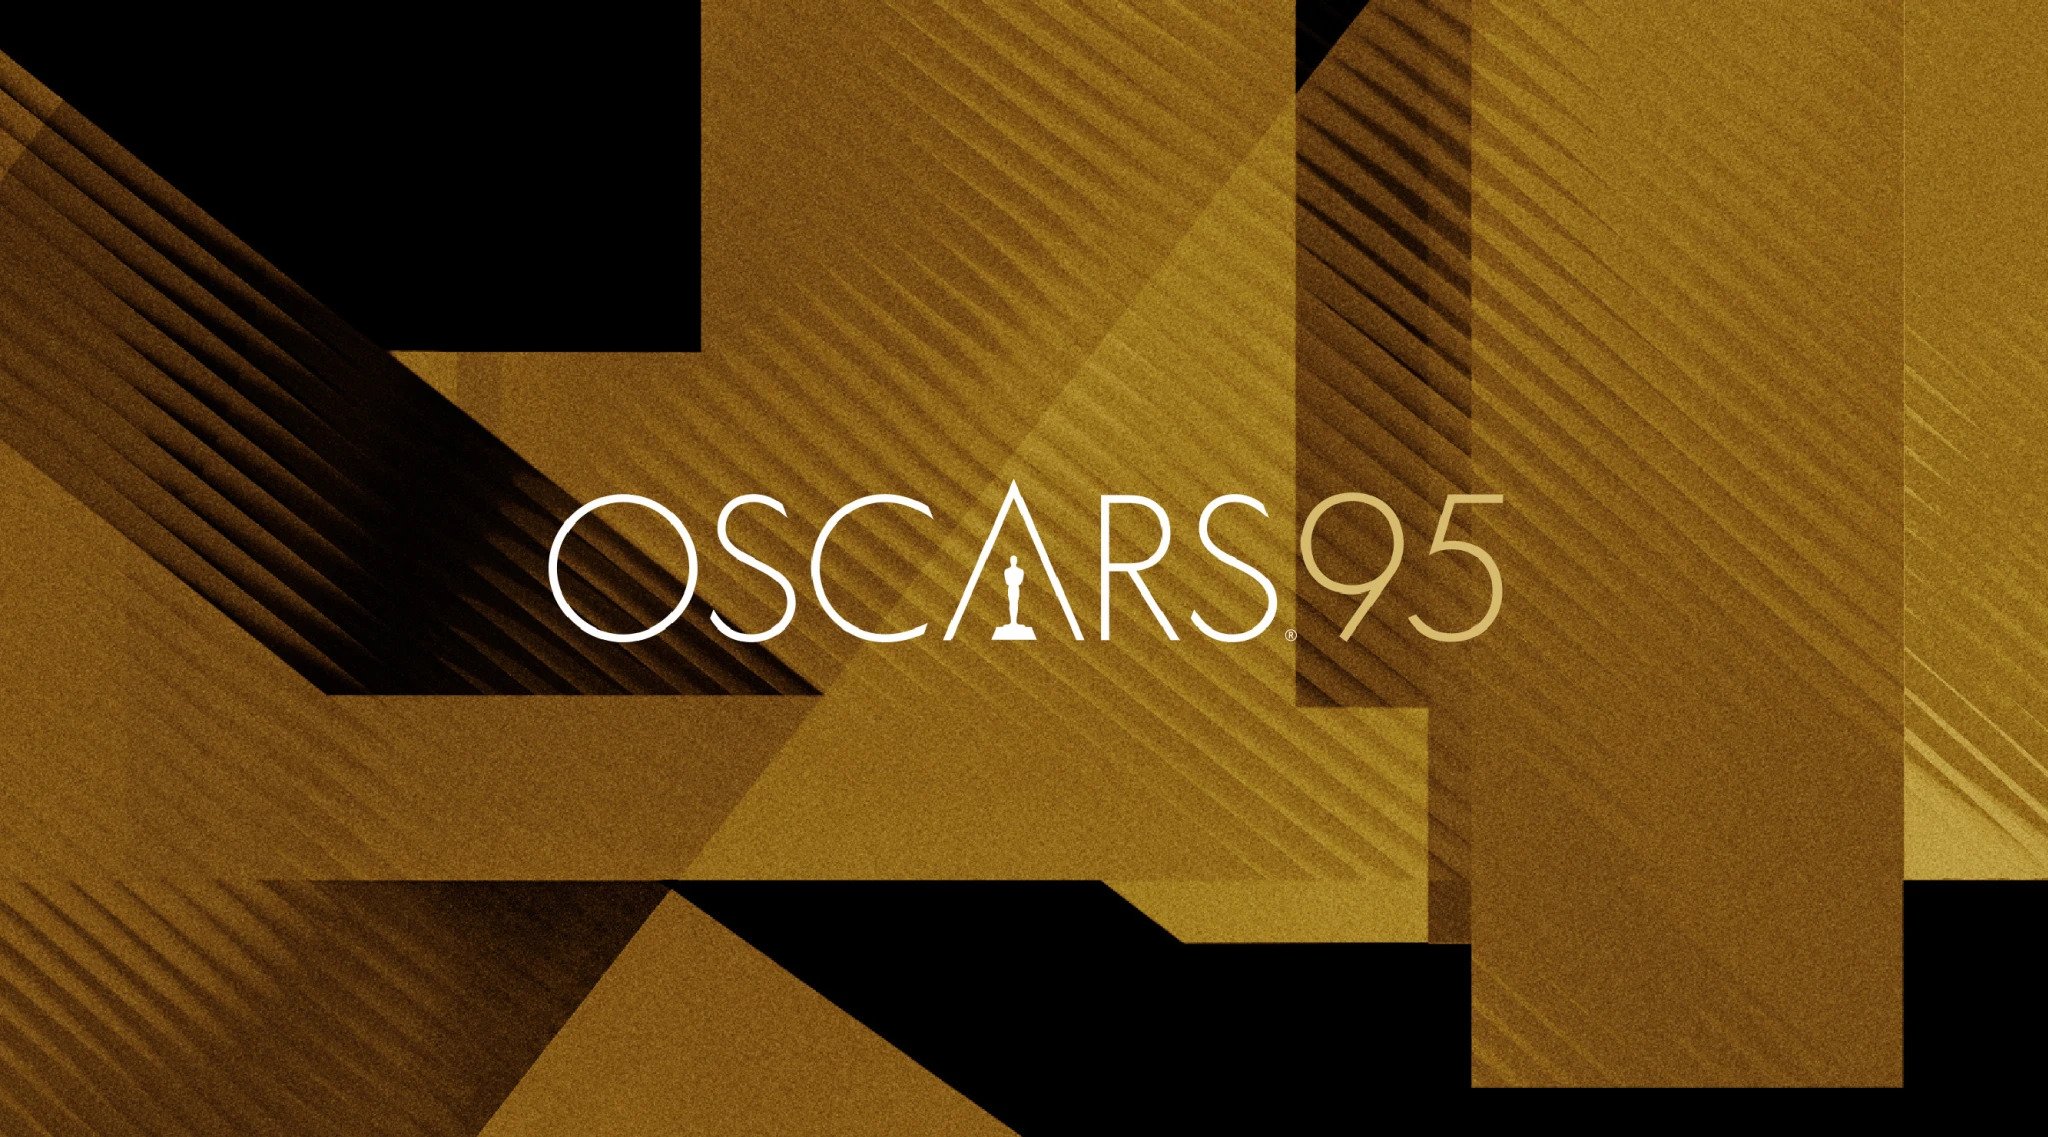 Saiba onde assistir filmes indicados ao Oscar 2023, entre cinema e